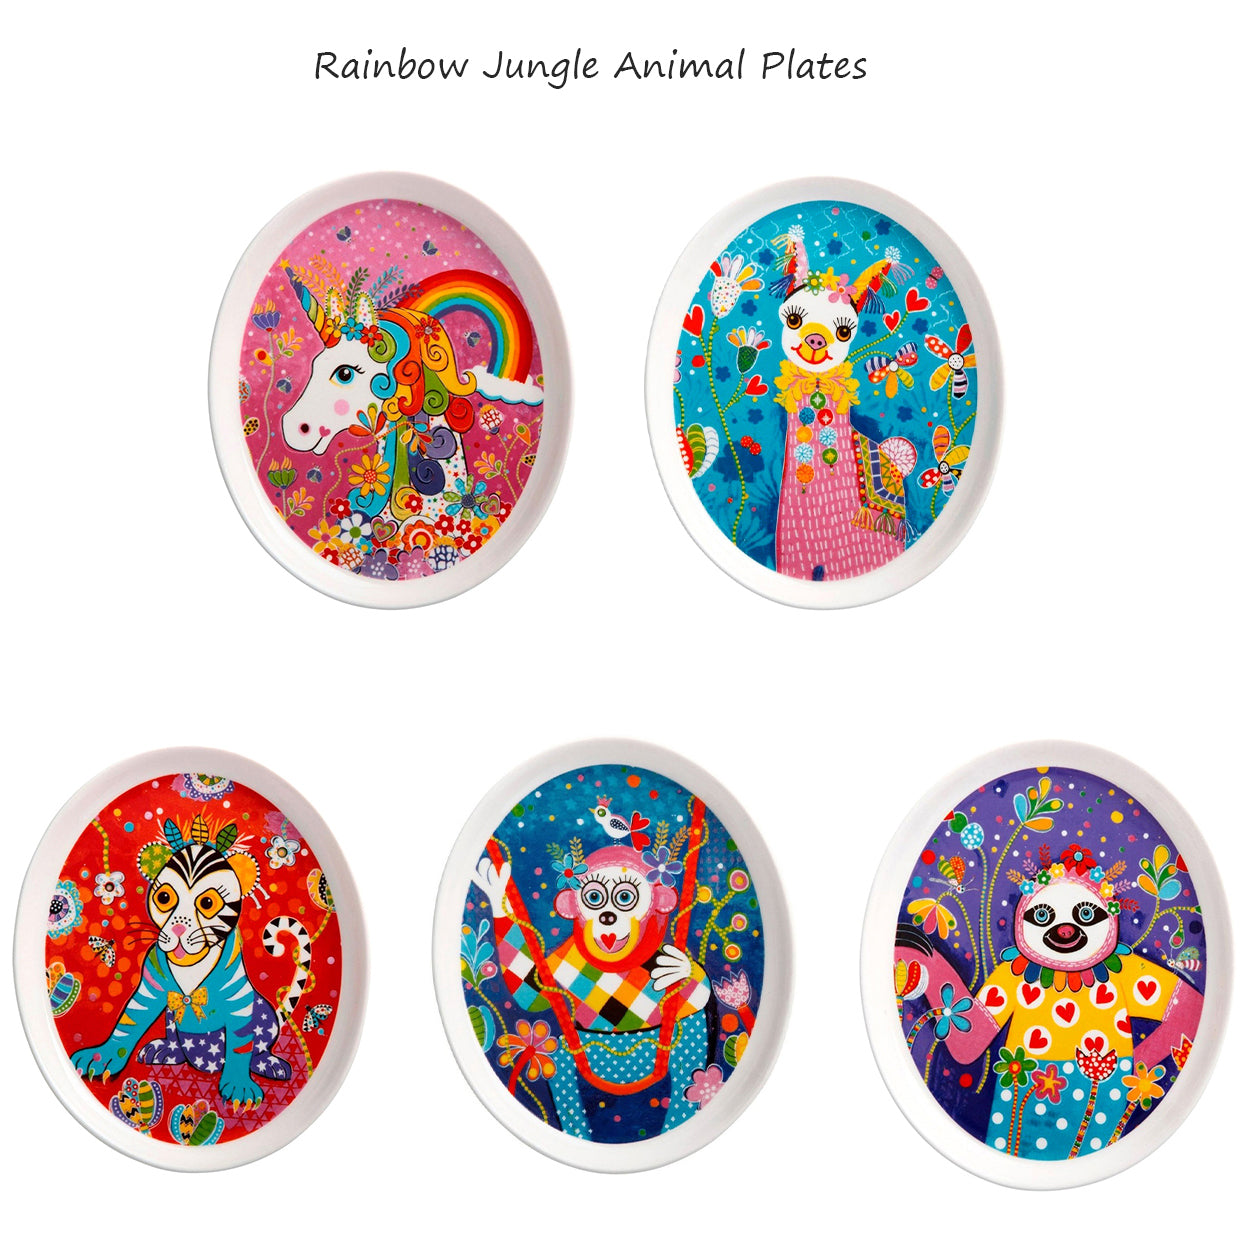 5 Rainbow Jungle Animal Plates